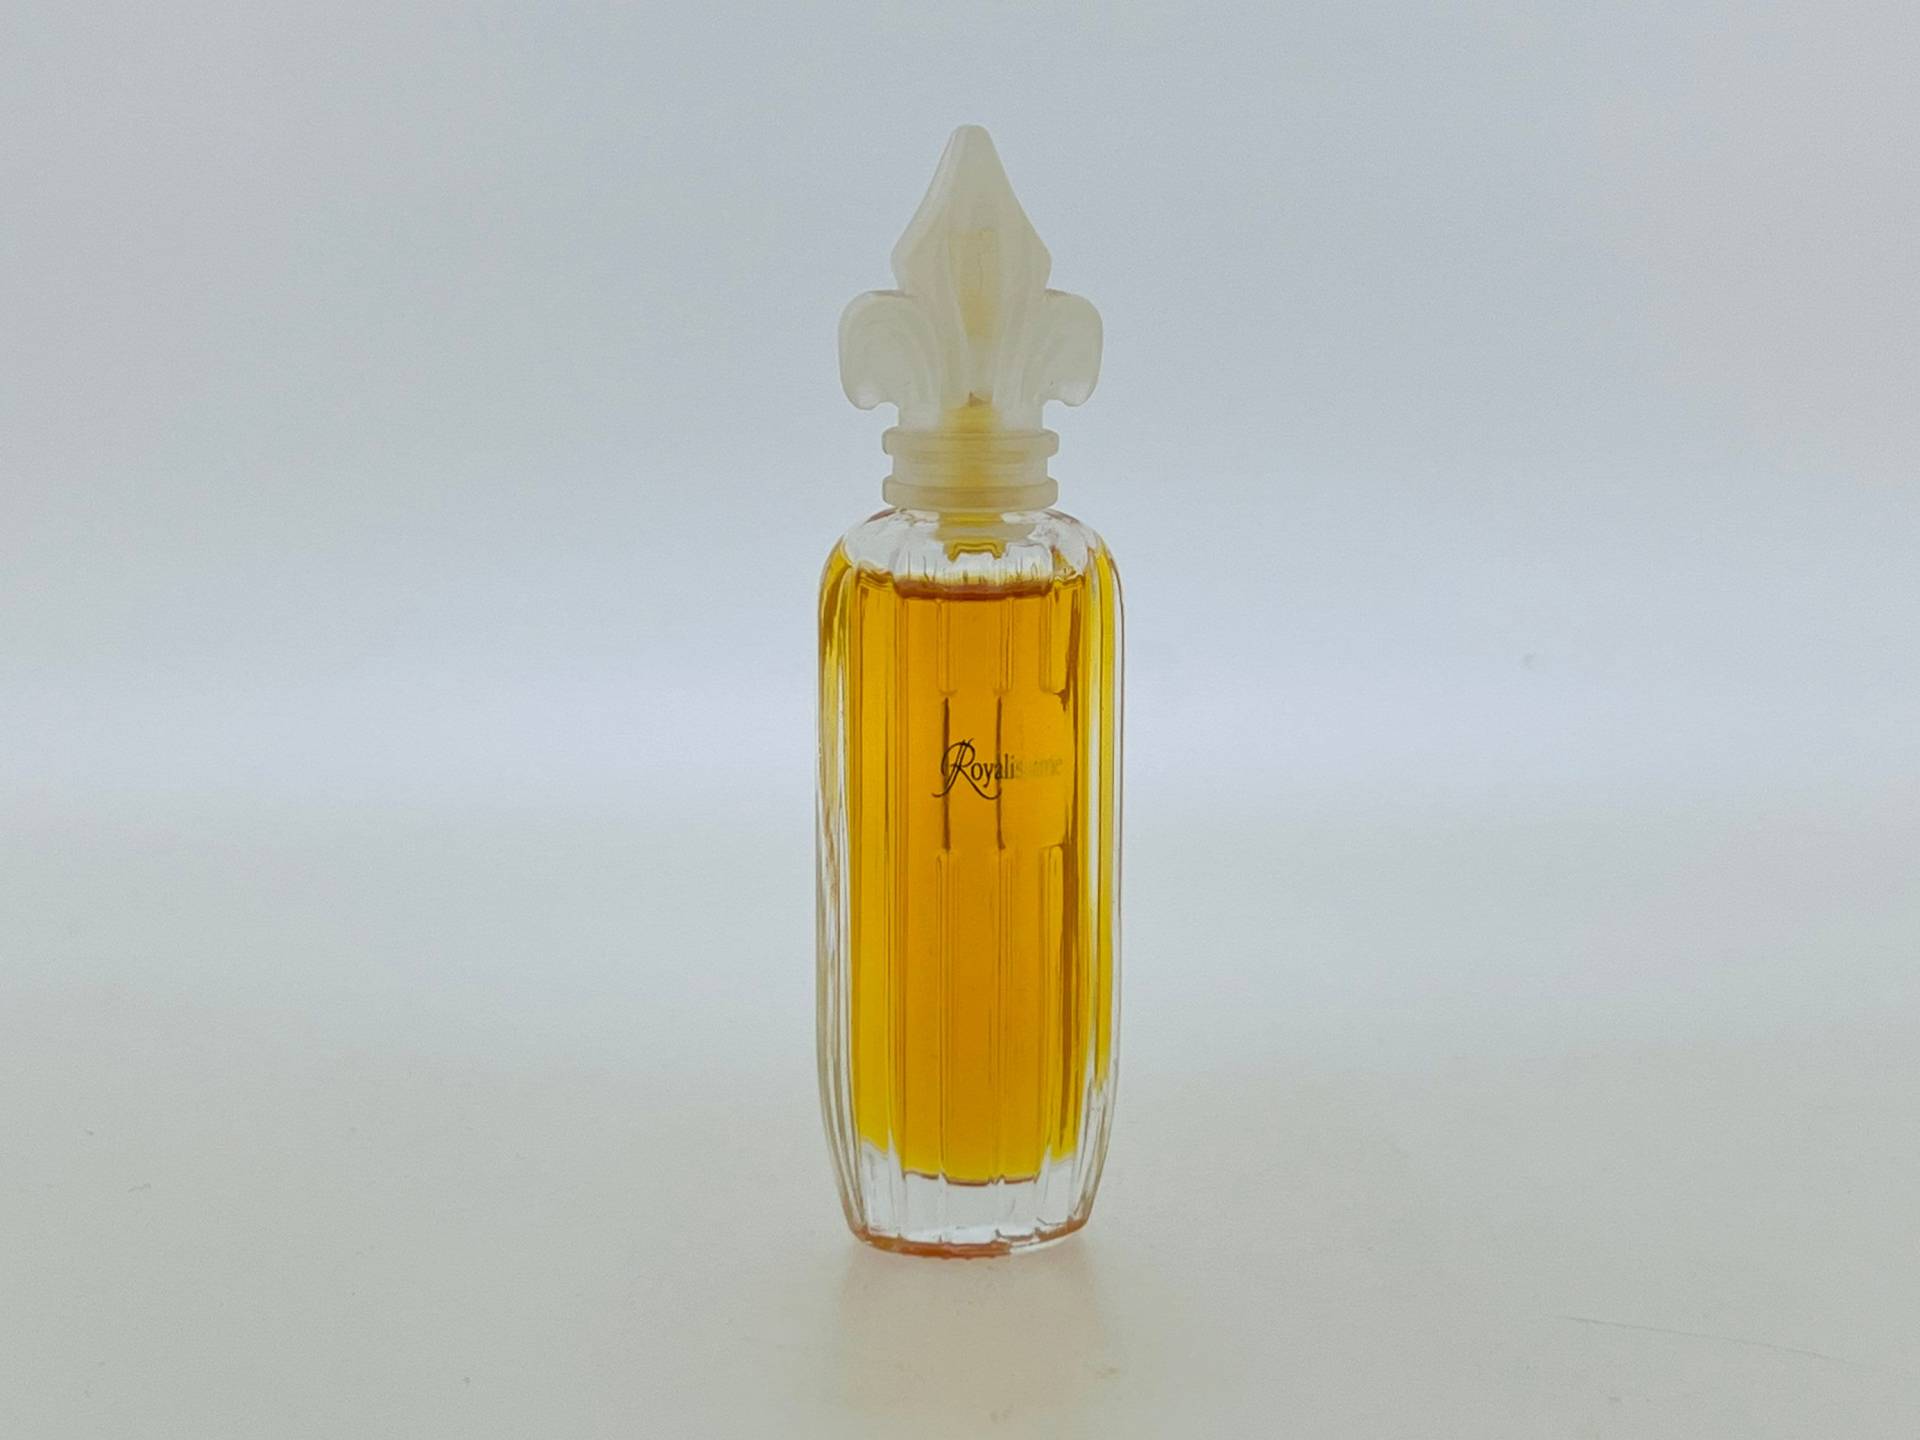 Vintage Miniatur Parfum, Royalissime, Prince Henri Pierre, D'orléans 1997 Eau De Toilette 7 Ml von VintagePerfumeShop